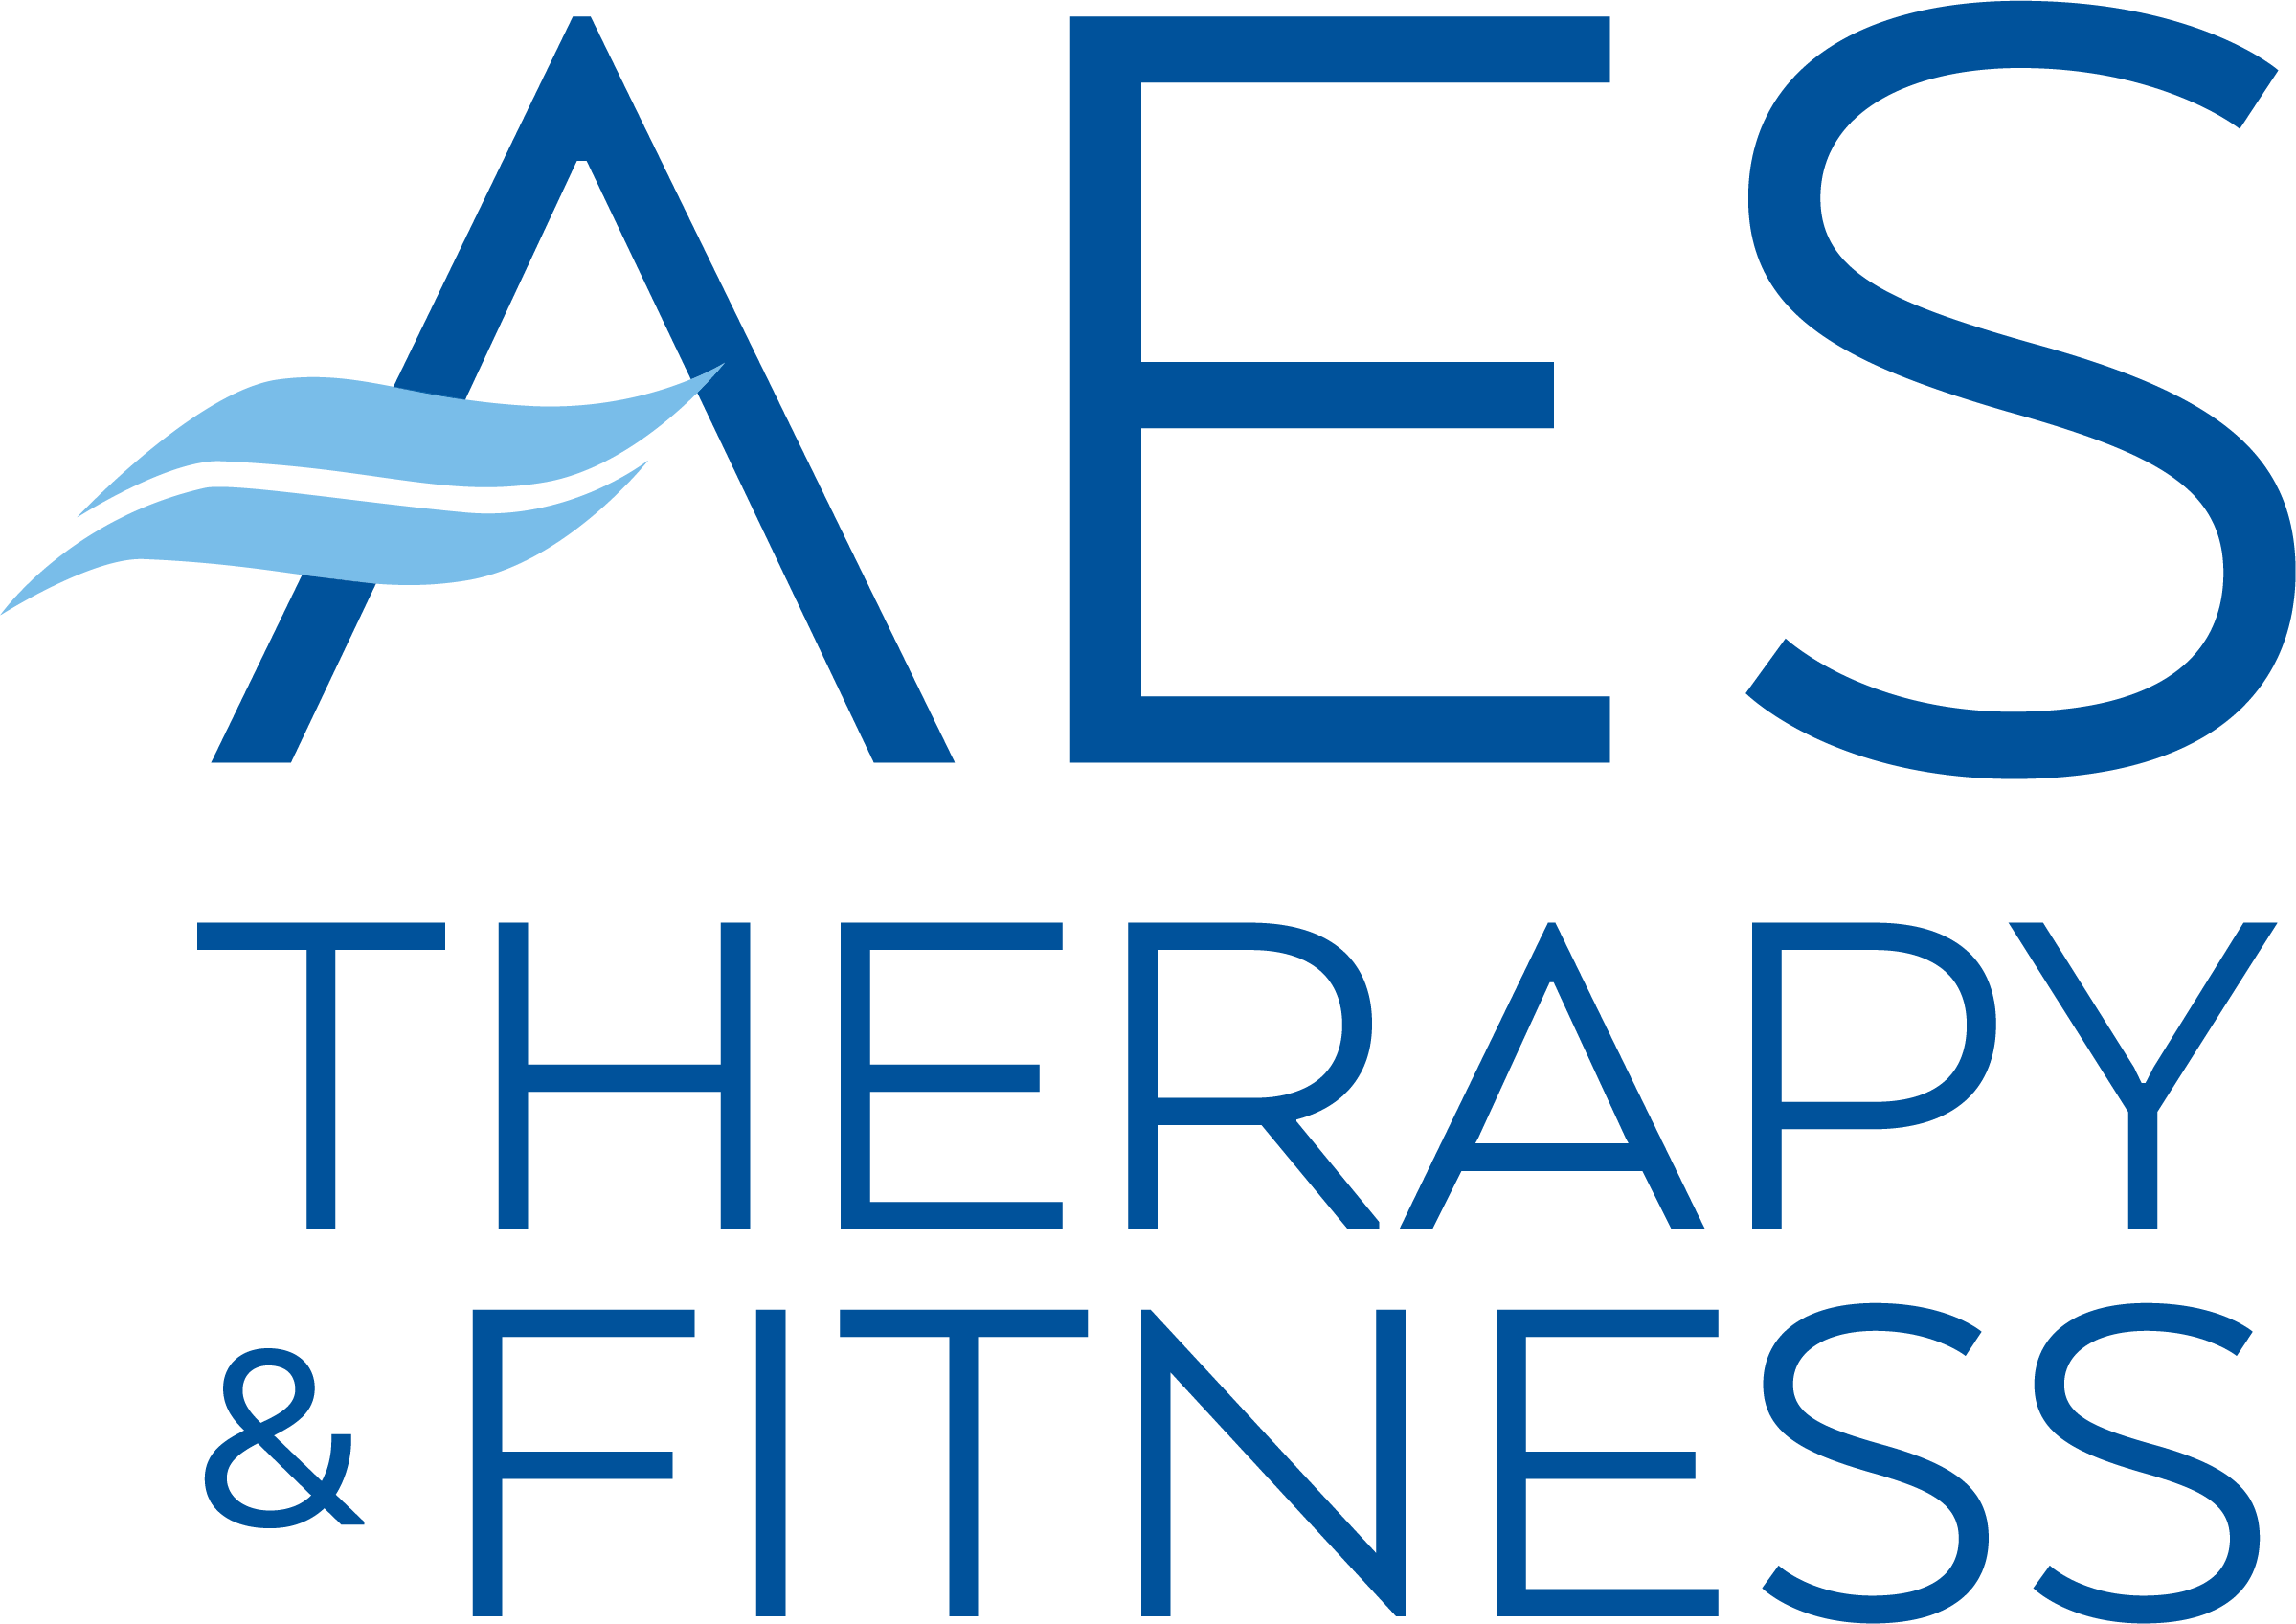 AES Logo - AES Logo